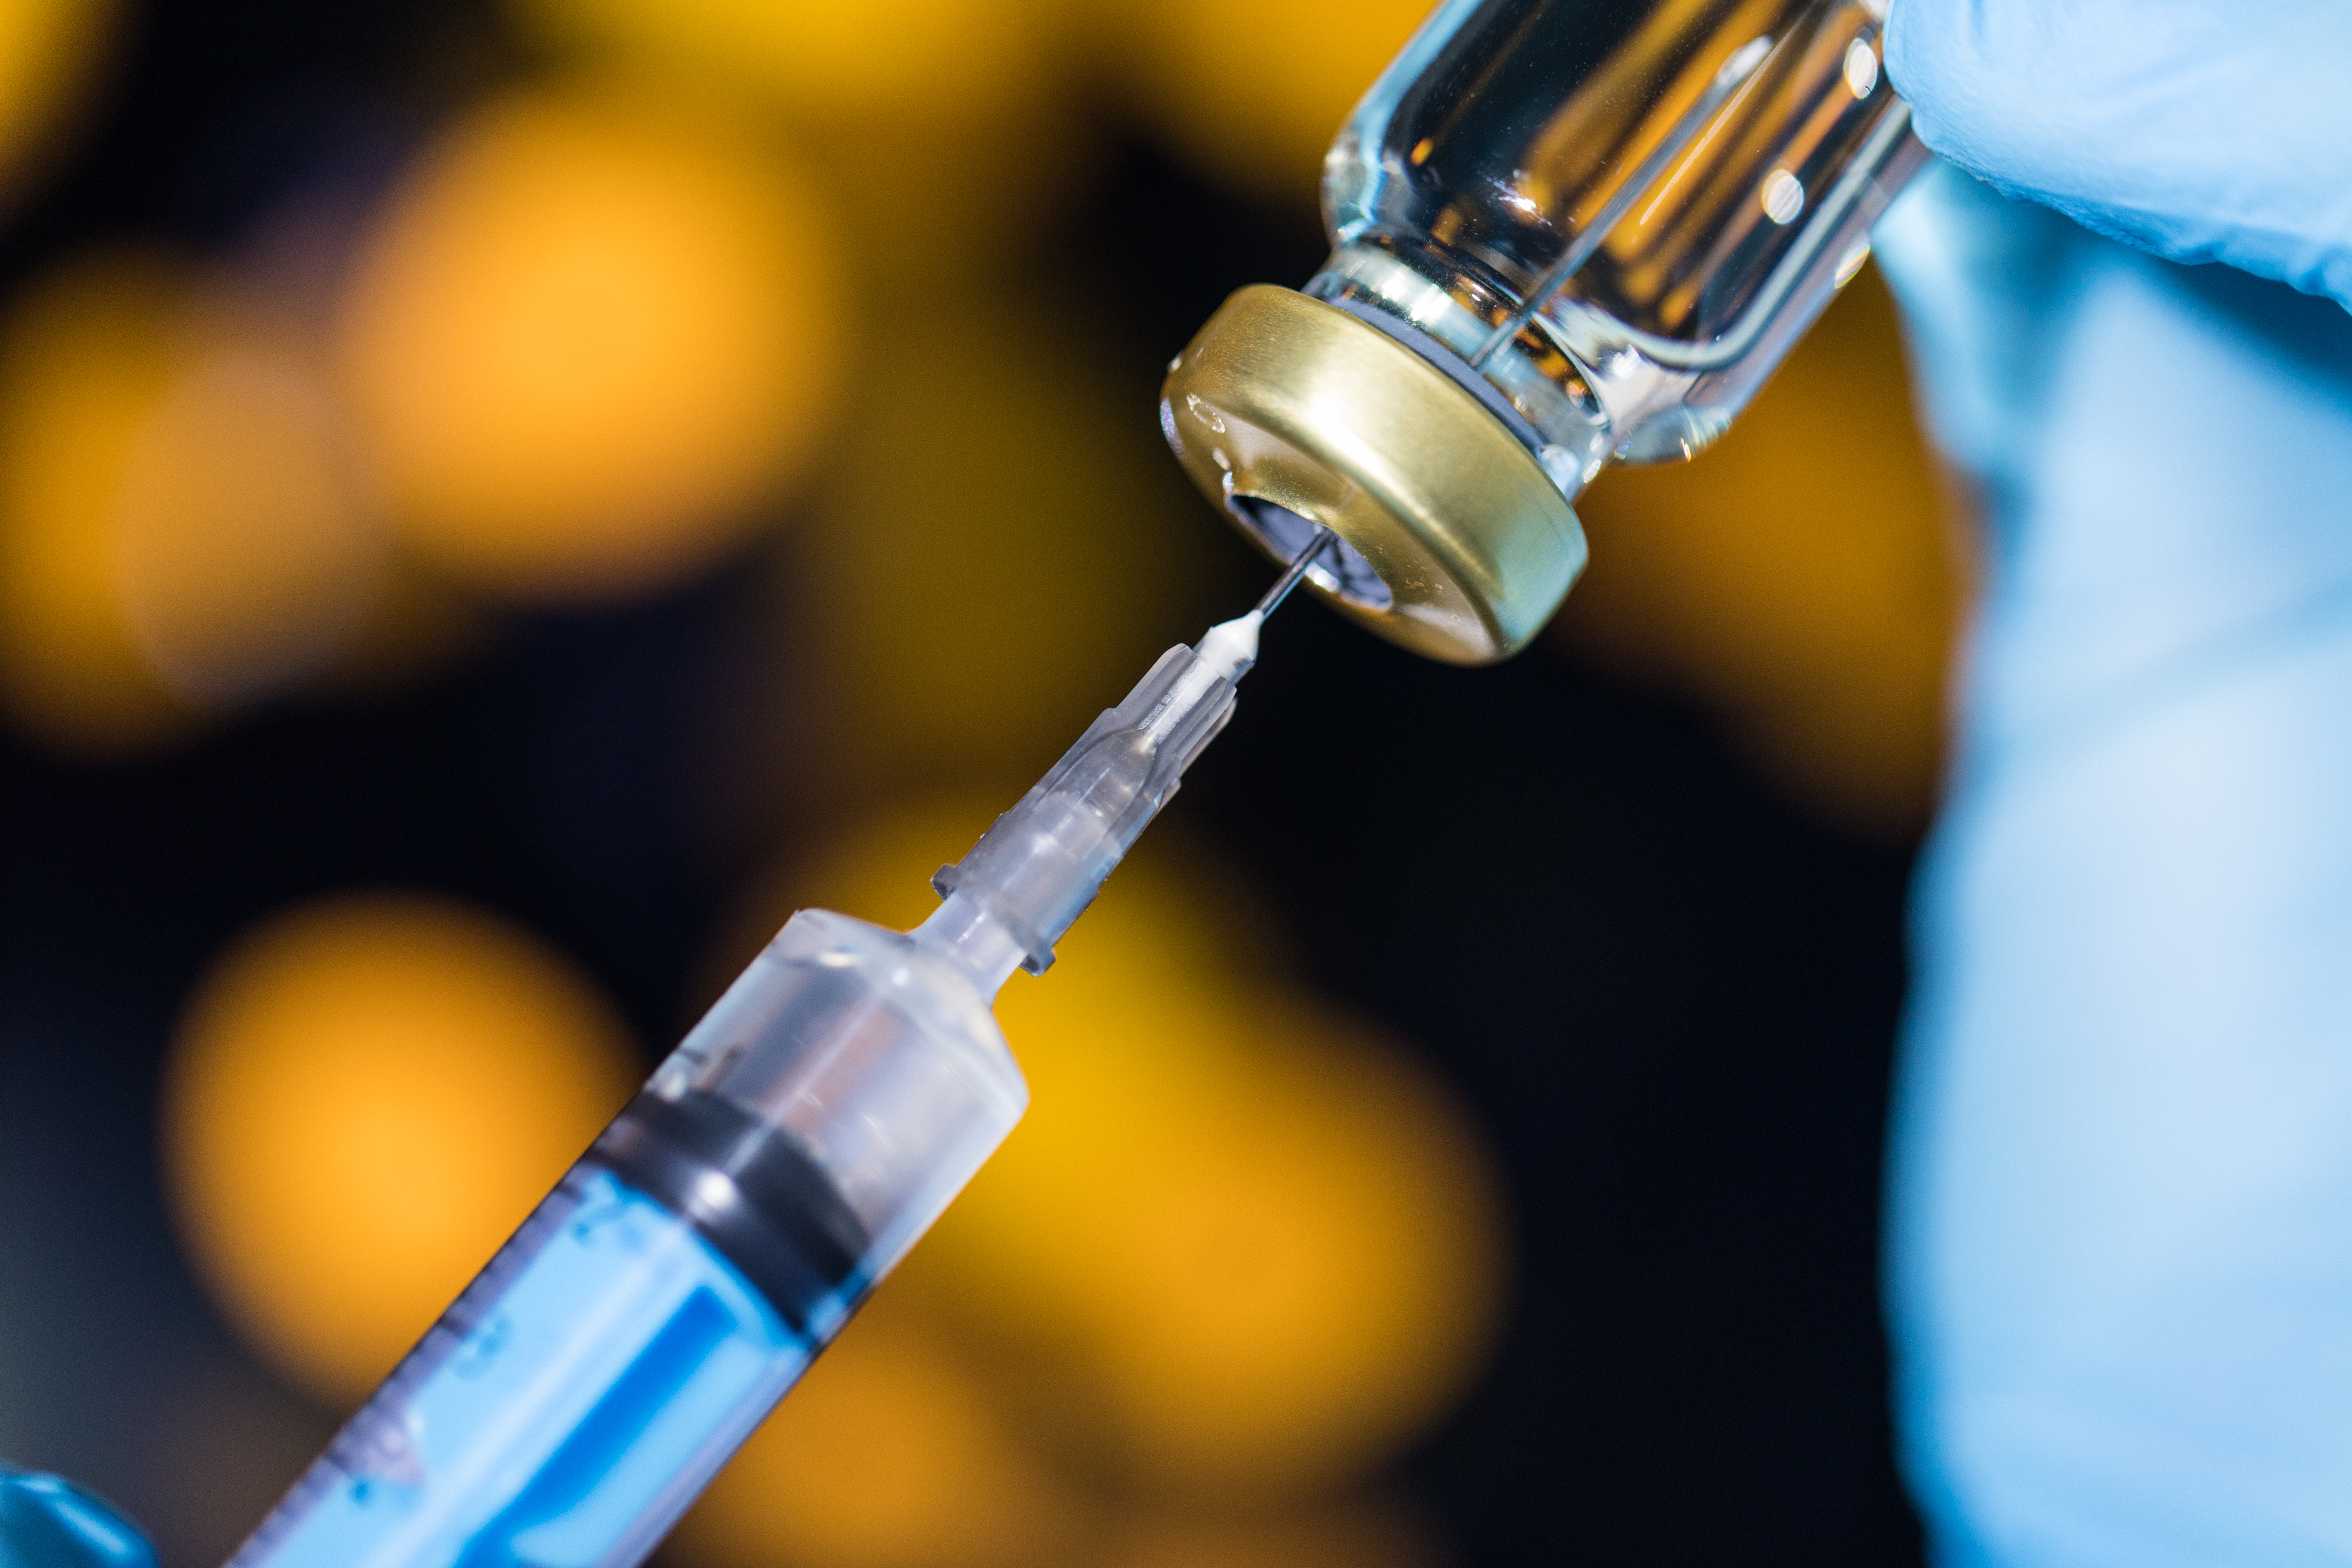     Choléra: la pénurie de vaccin force à se contenter d'une seule dose

